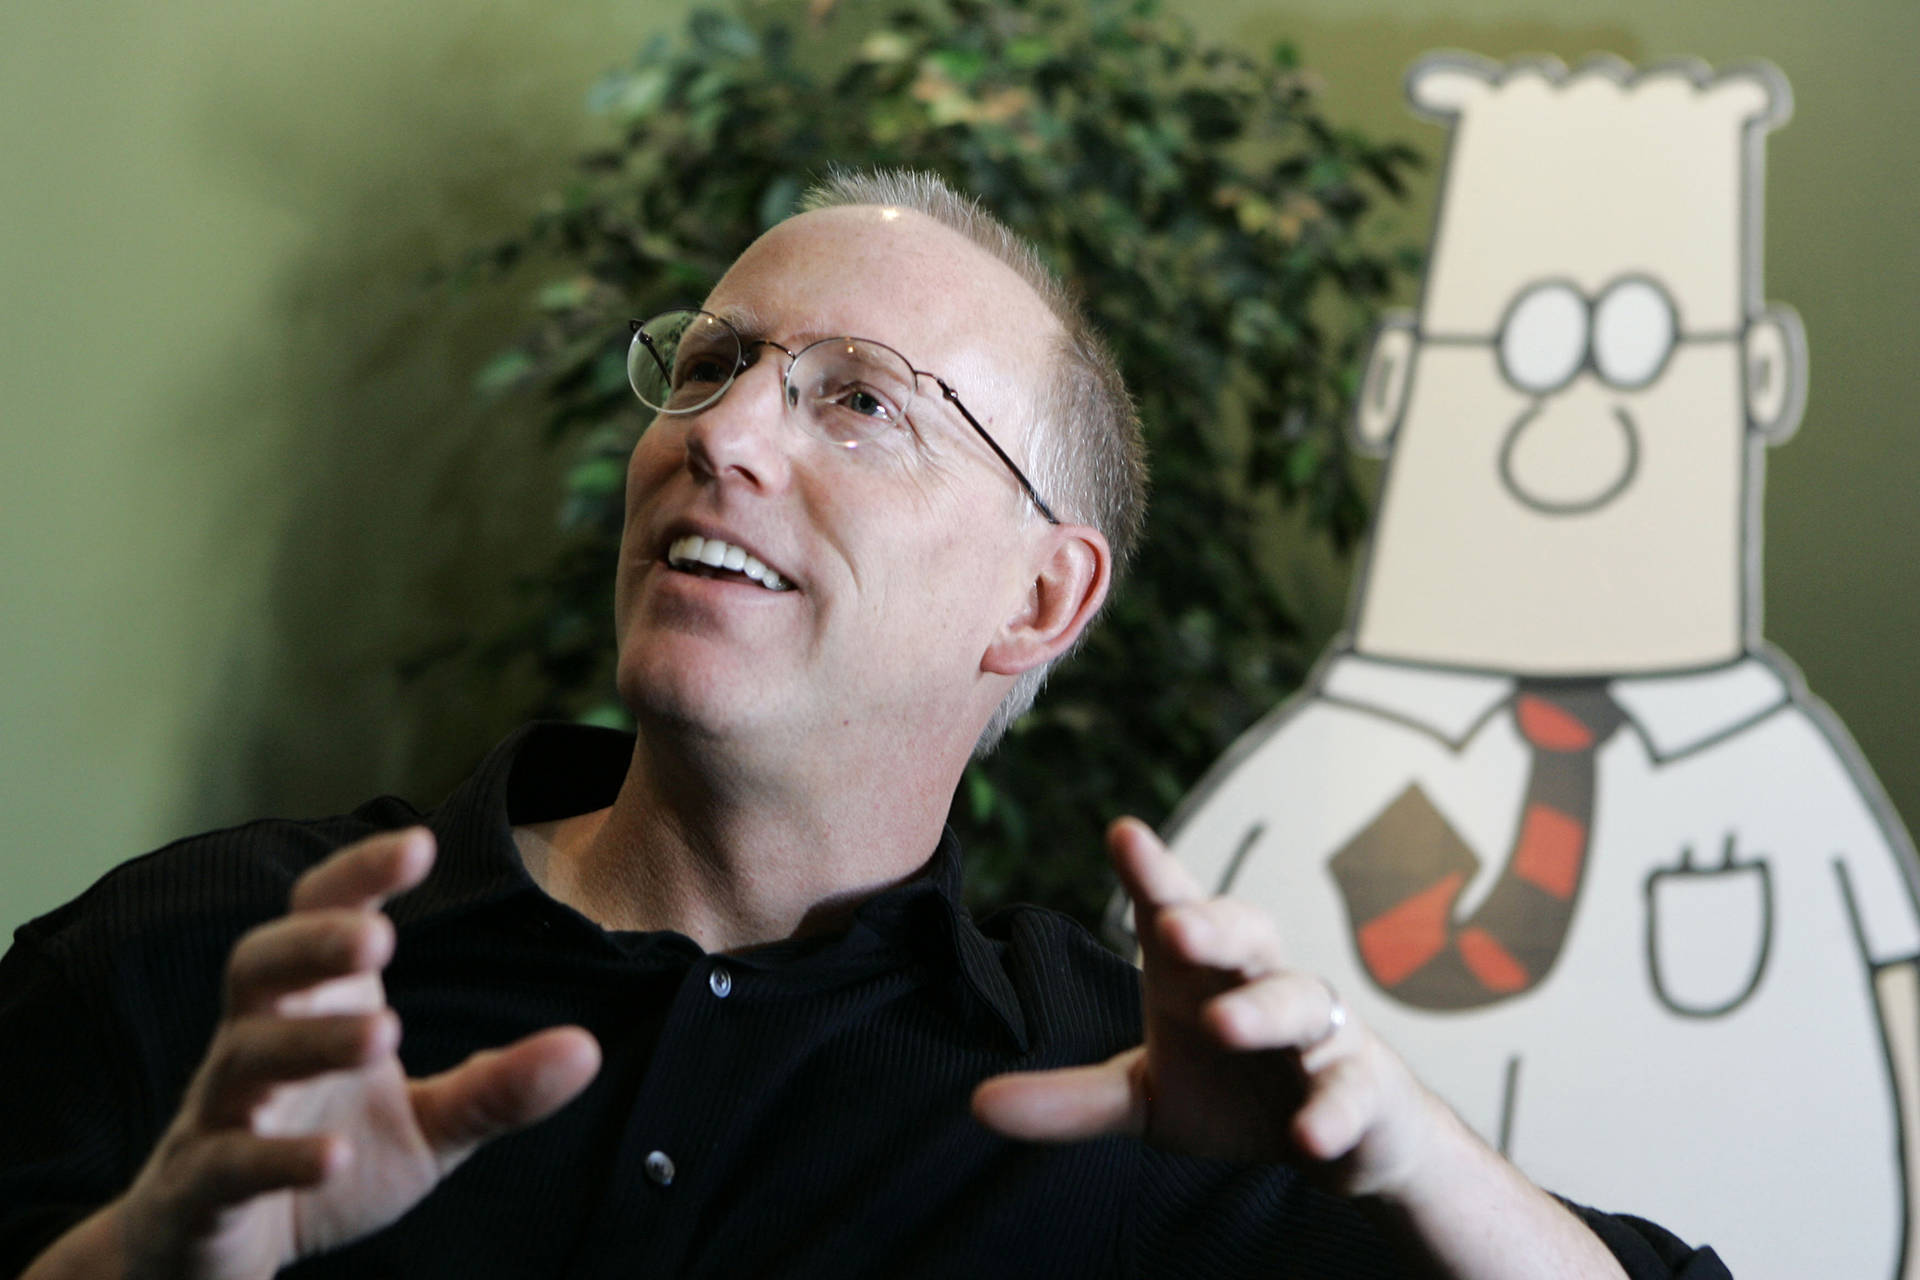 Dilbert And Creator Wallpaper